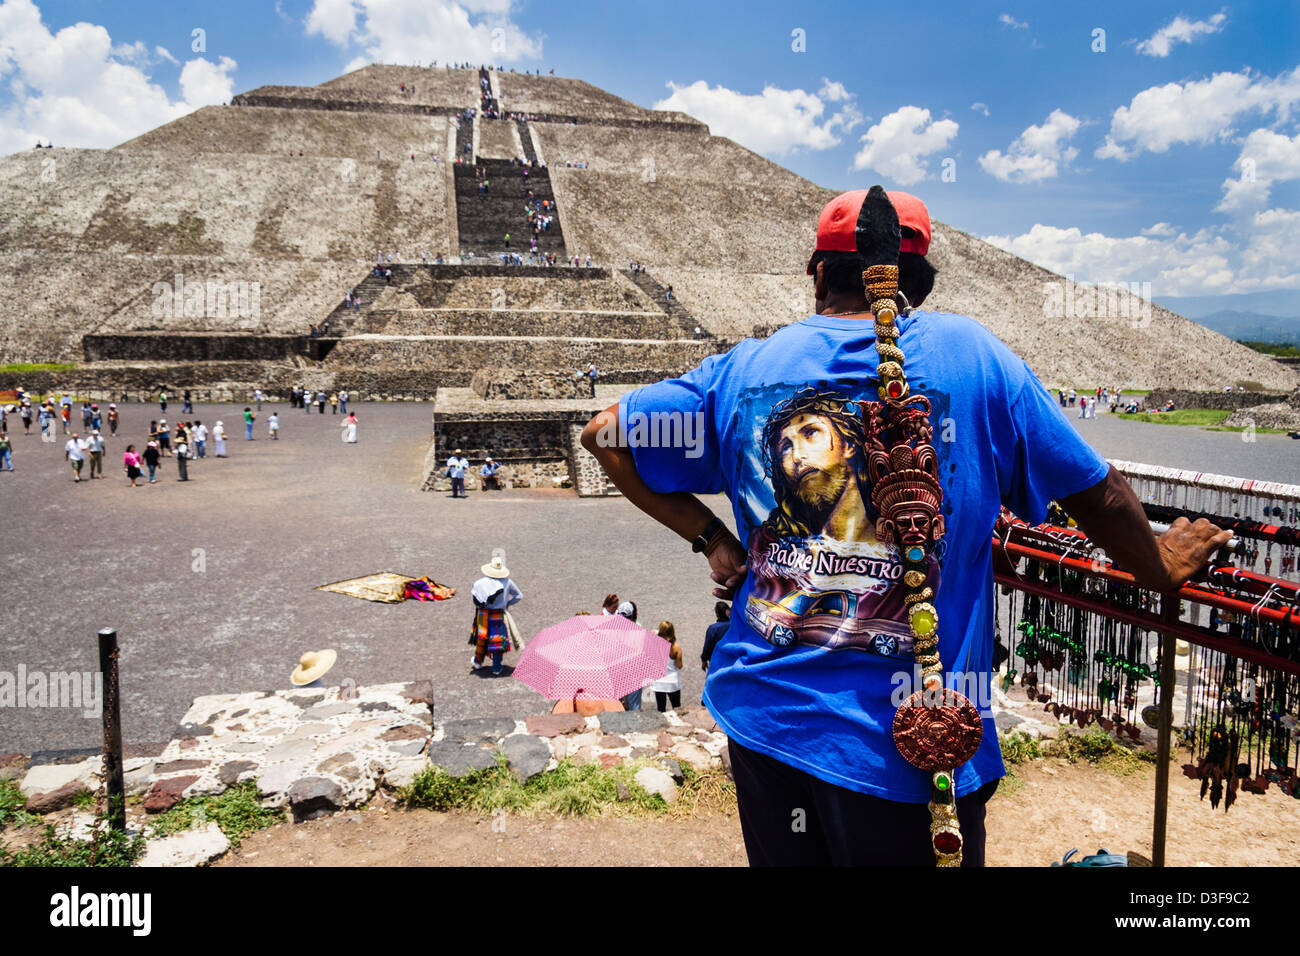 Souvenir vendor next to Teotihuacan Sun Pyramid, Mexico Stock Photo